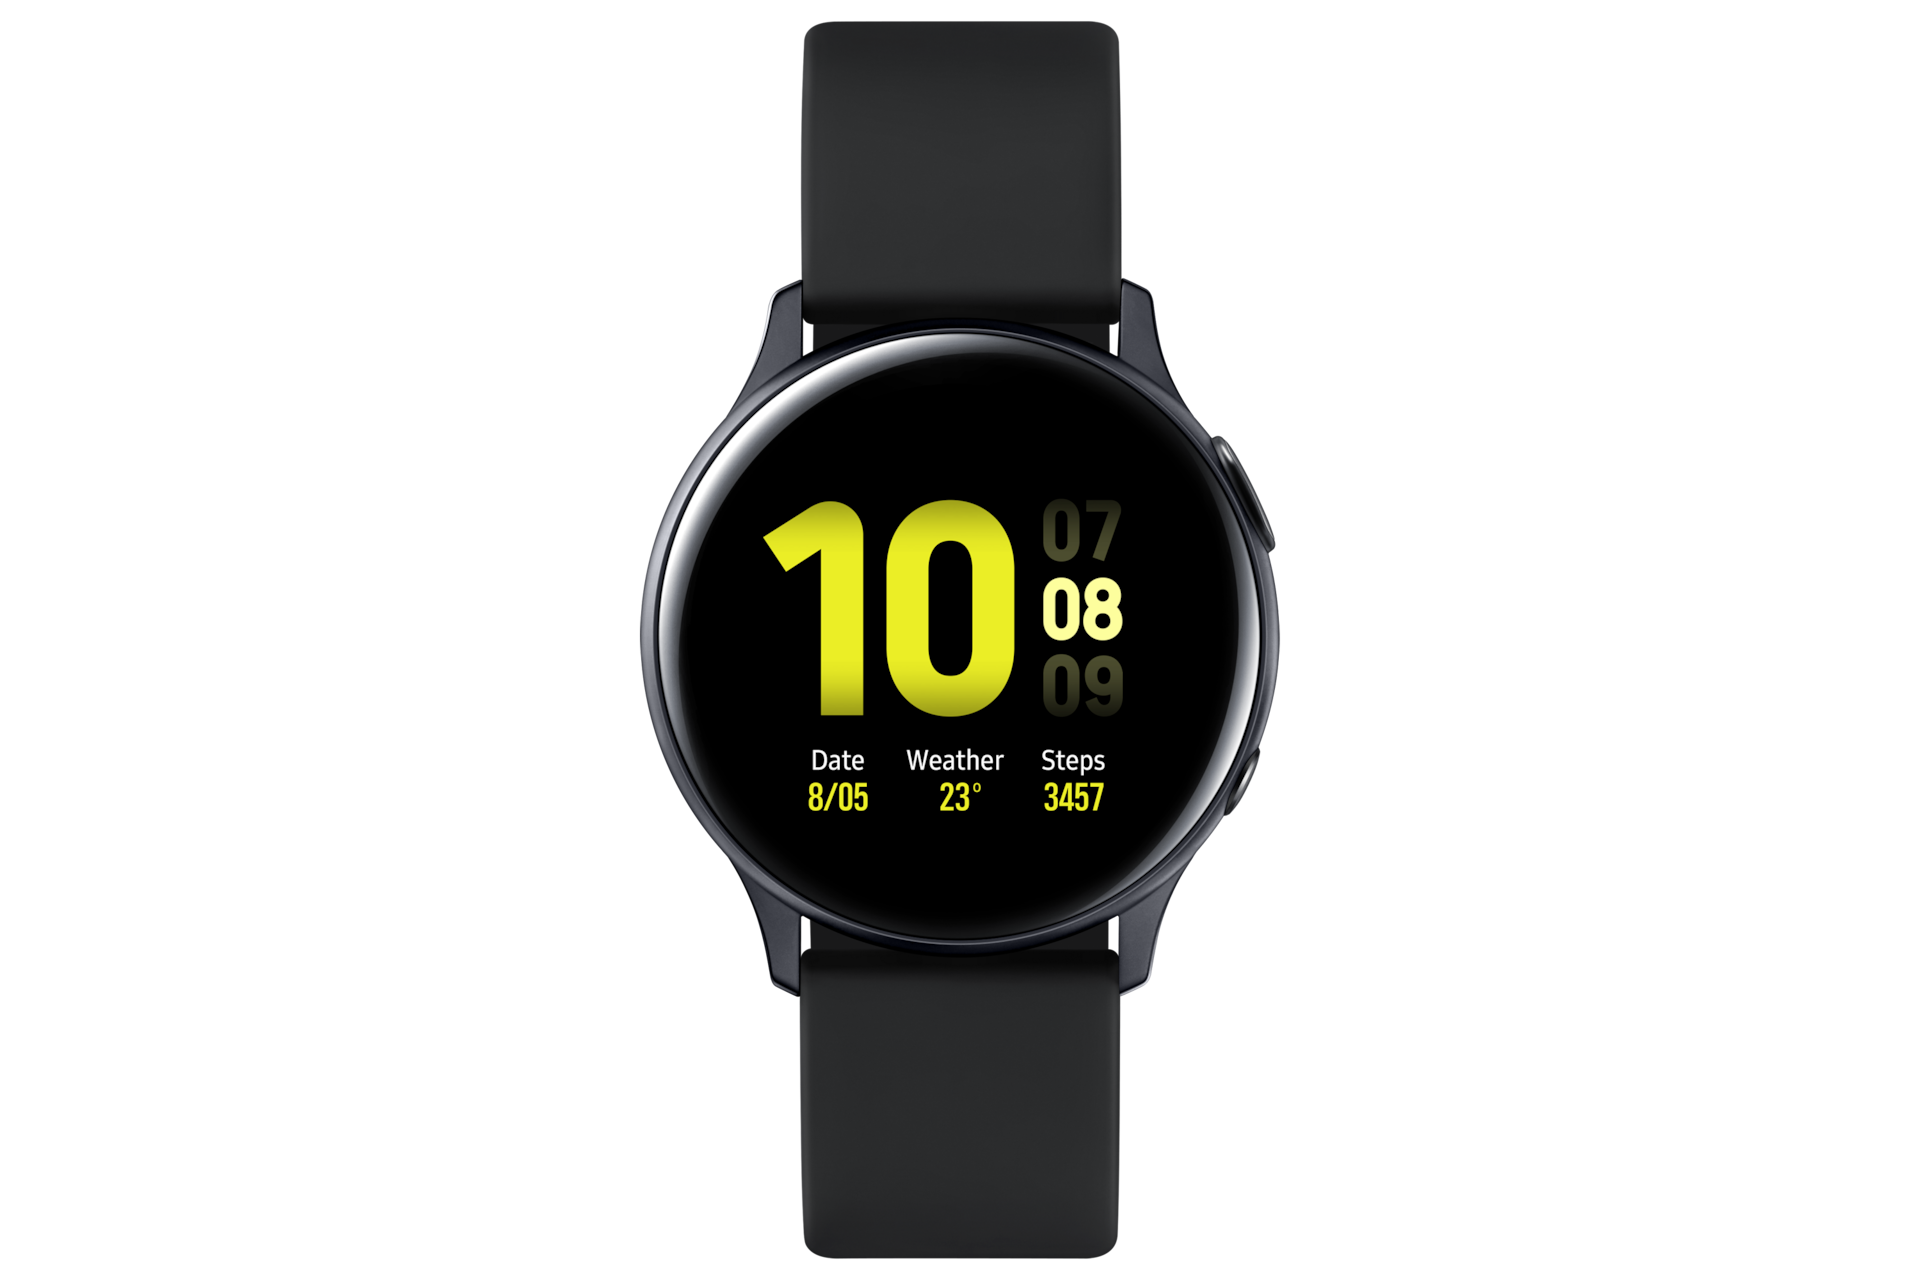 Samsung Galaxy Watch Active2: Chiếc đồng hồ thông minh Samsung Galaxy Watch Active2 sẽ mang đến cho bạn một trải nghiệm khác biệt với tính năng đo nhịp tim, chế độ theo dõi sức khỏe và đặc biệt là khả năng kết nối 4G LTE. Không chỉ là một phụ kiện thời trang, đây còn là một trợ lý đắc lực trong cuộc sống hằng ngày của bạn.